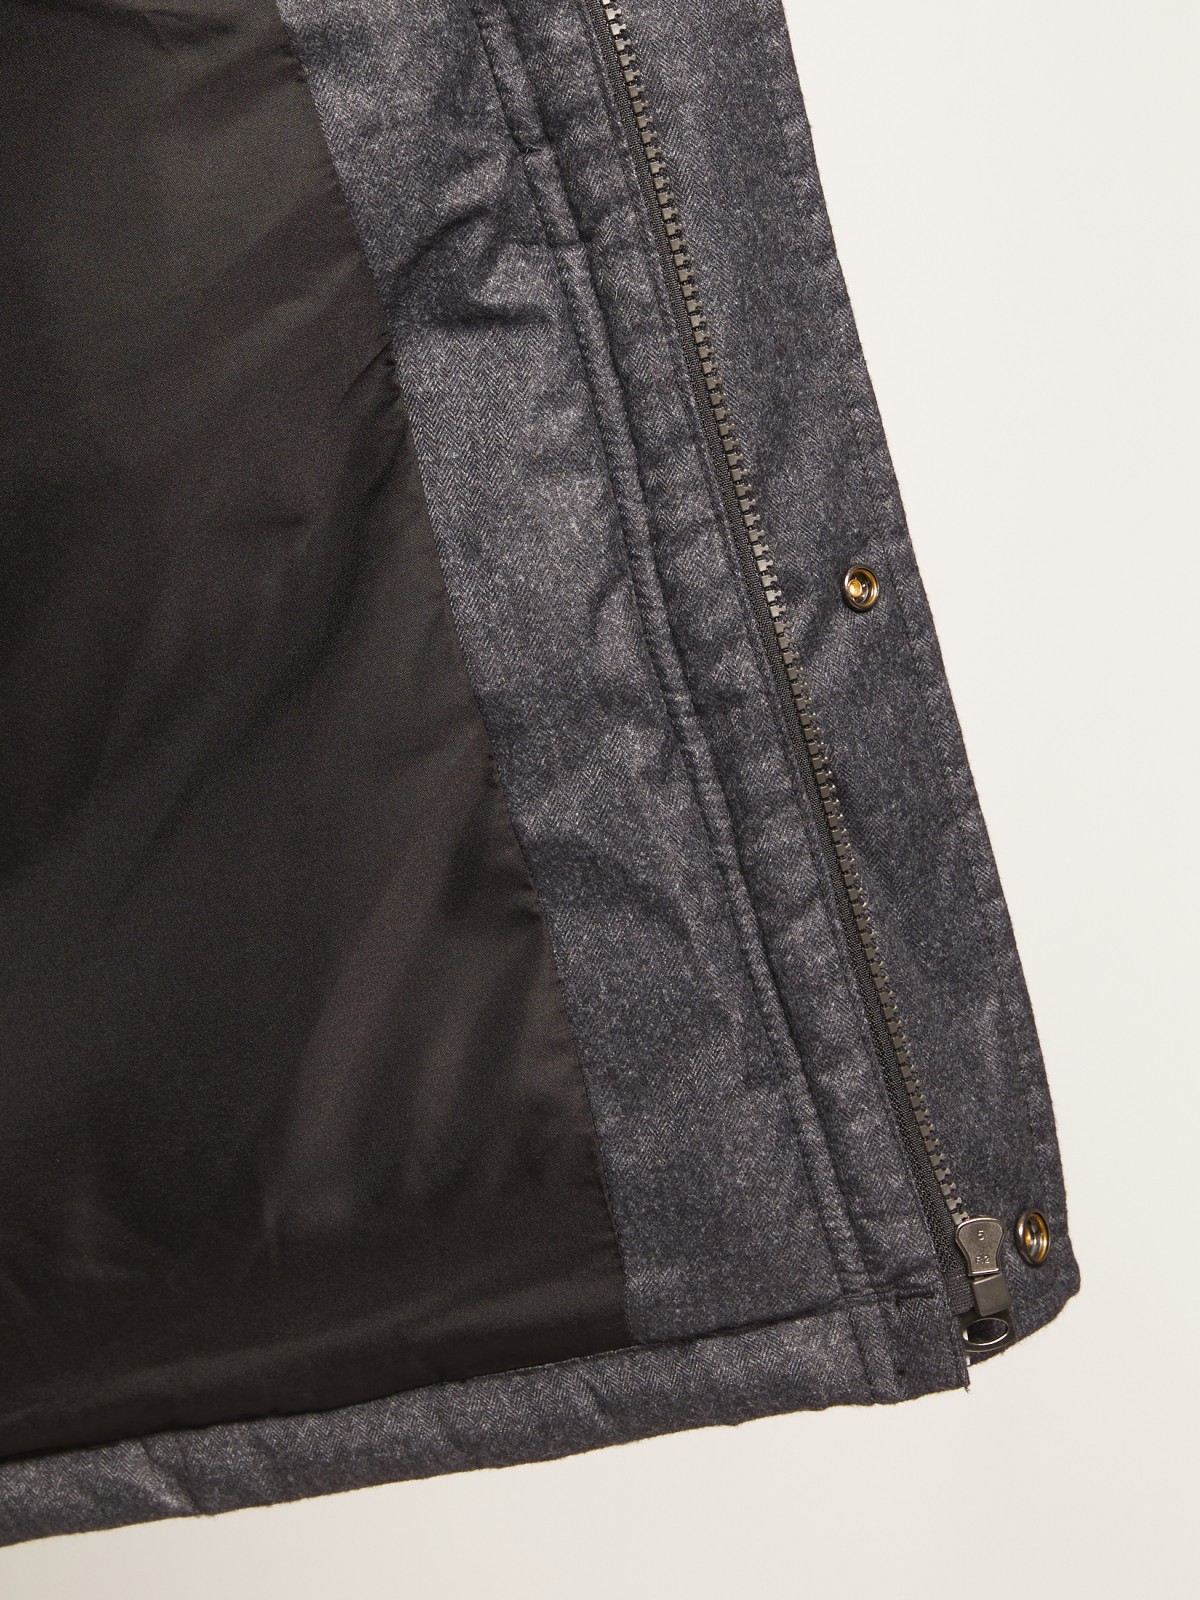 Тёплая куртка с накладными карманами zolla 010345112044, цвет серый, размер S - фото 3